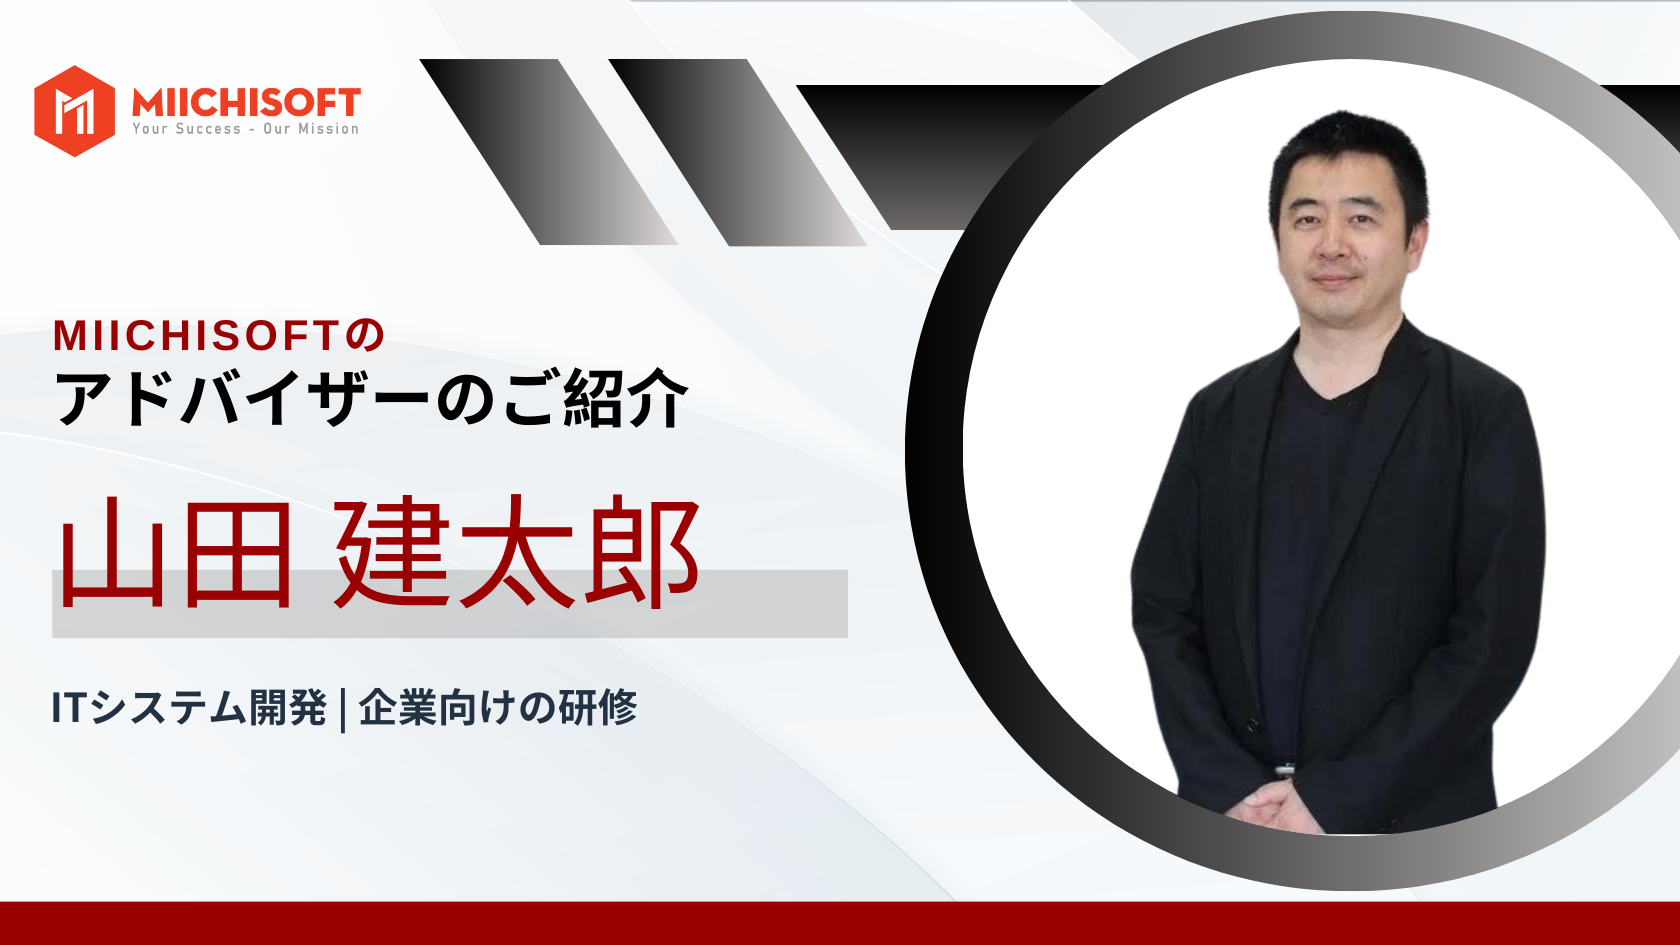 アドバイザー紹介 | デジタルトランスフォーメーションの専門家、山田 建太郎 氏がMiichisoftに参加されます!